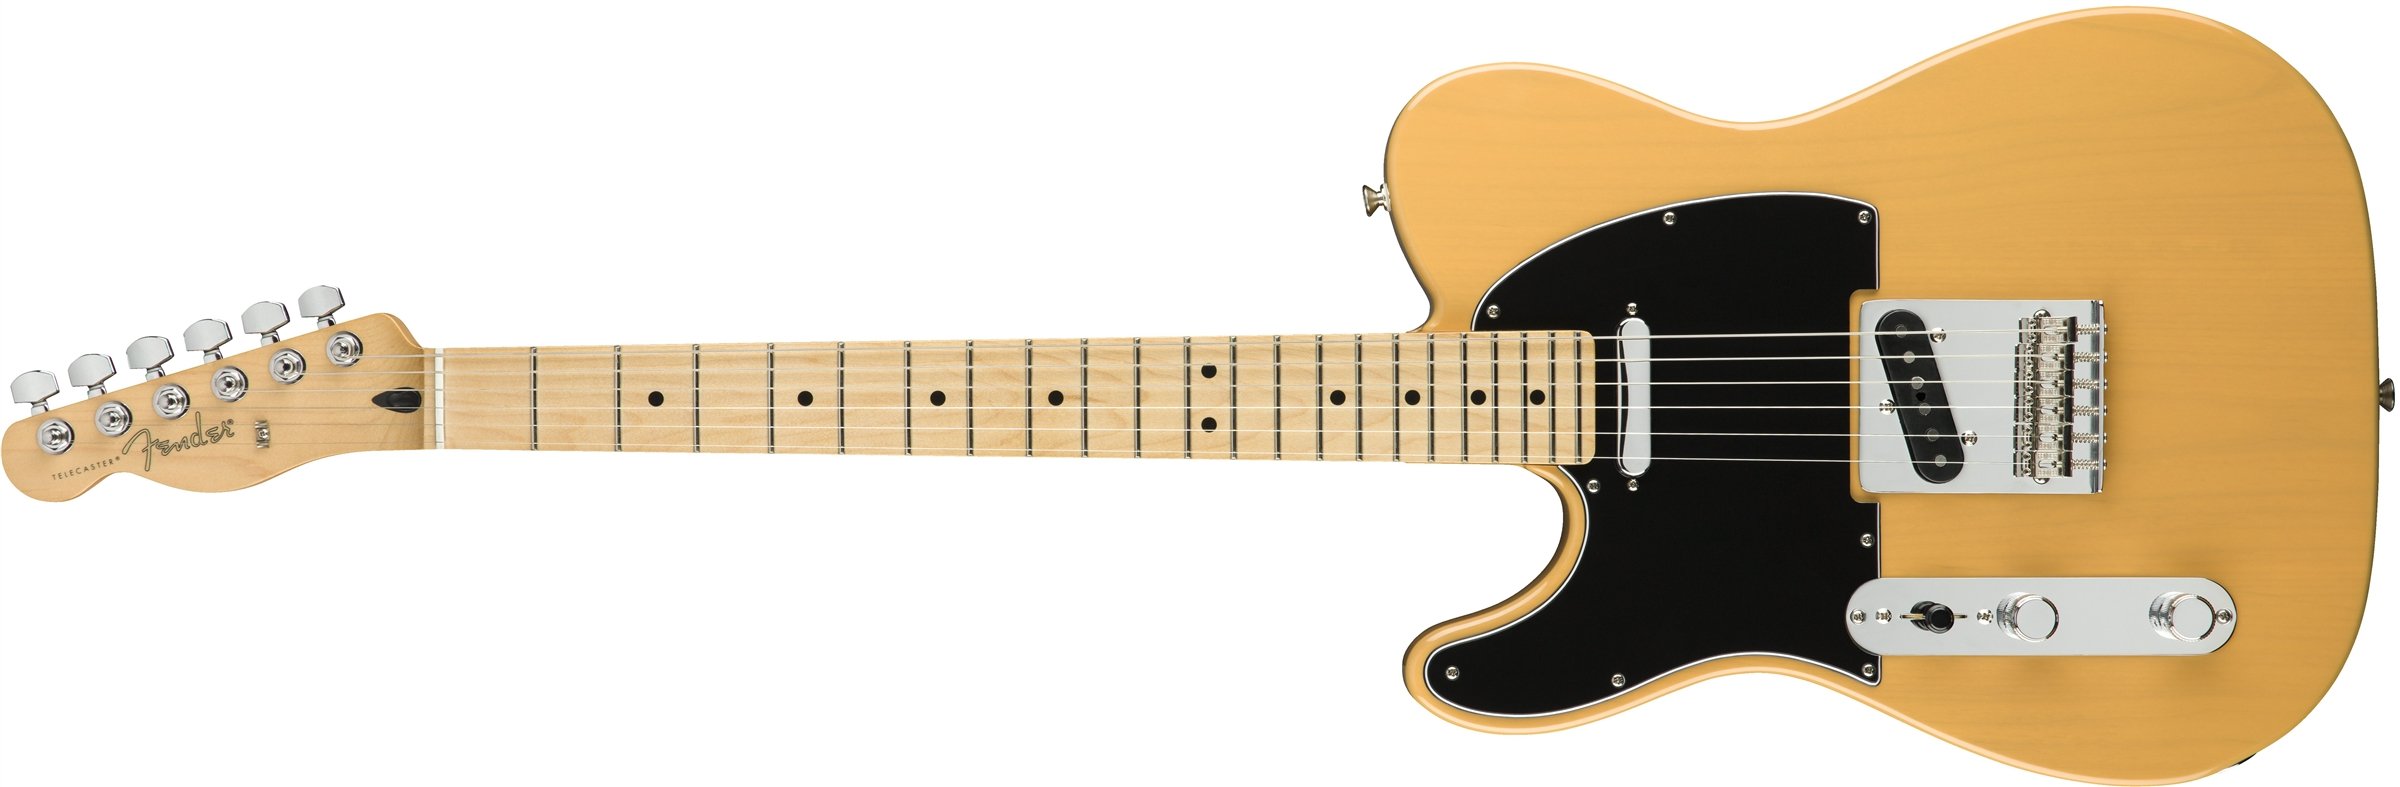 Fender प्लेयर टेलीकास्टर इलेक्ट्रिक गिटार...